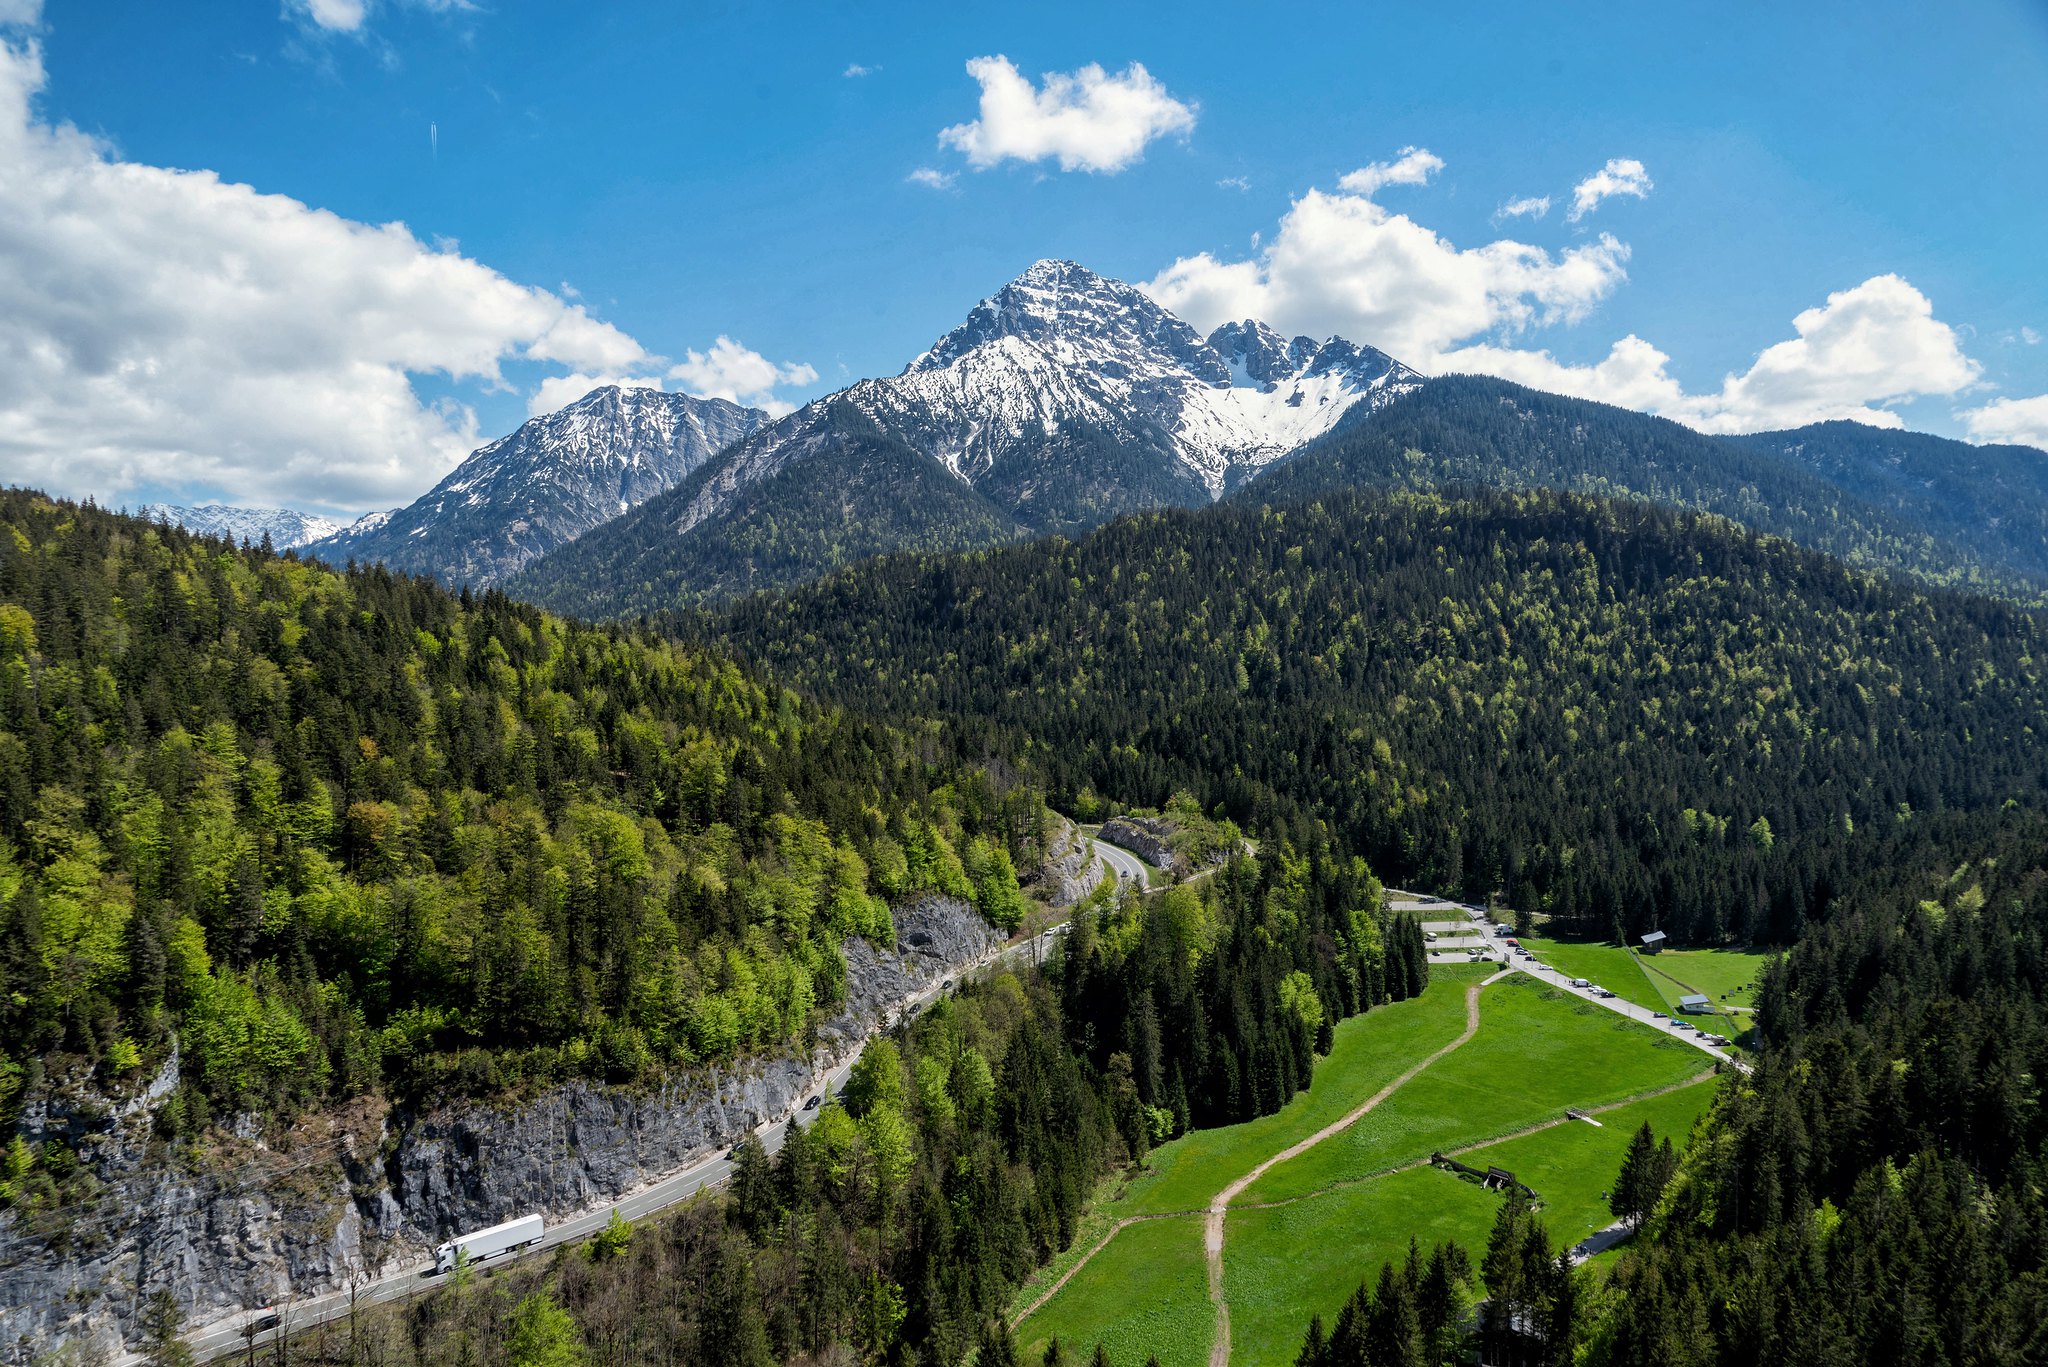 Reutte in Tyrol, Austria.